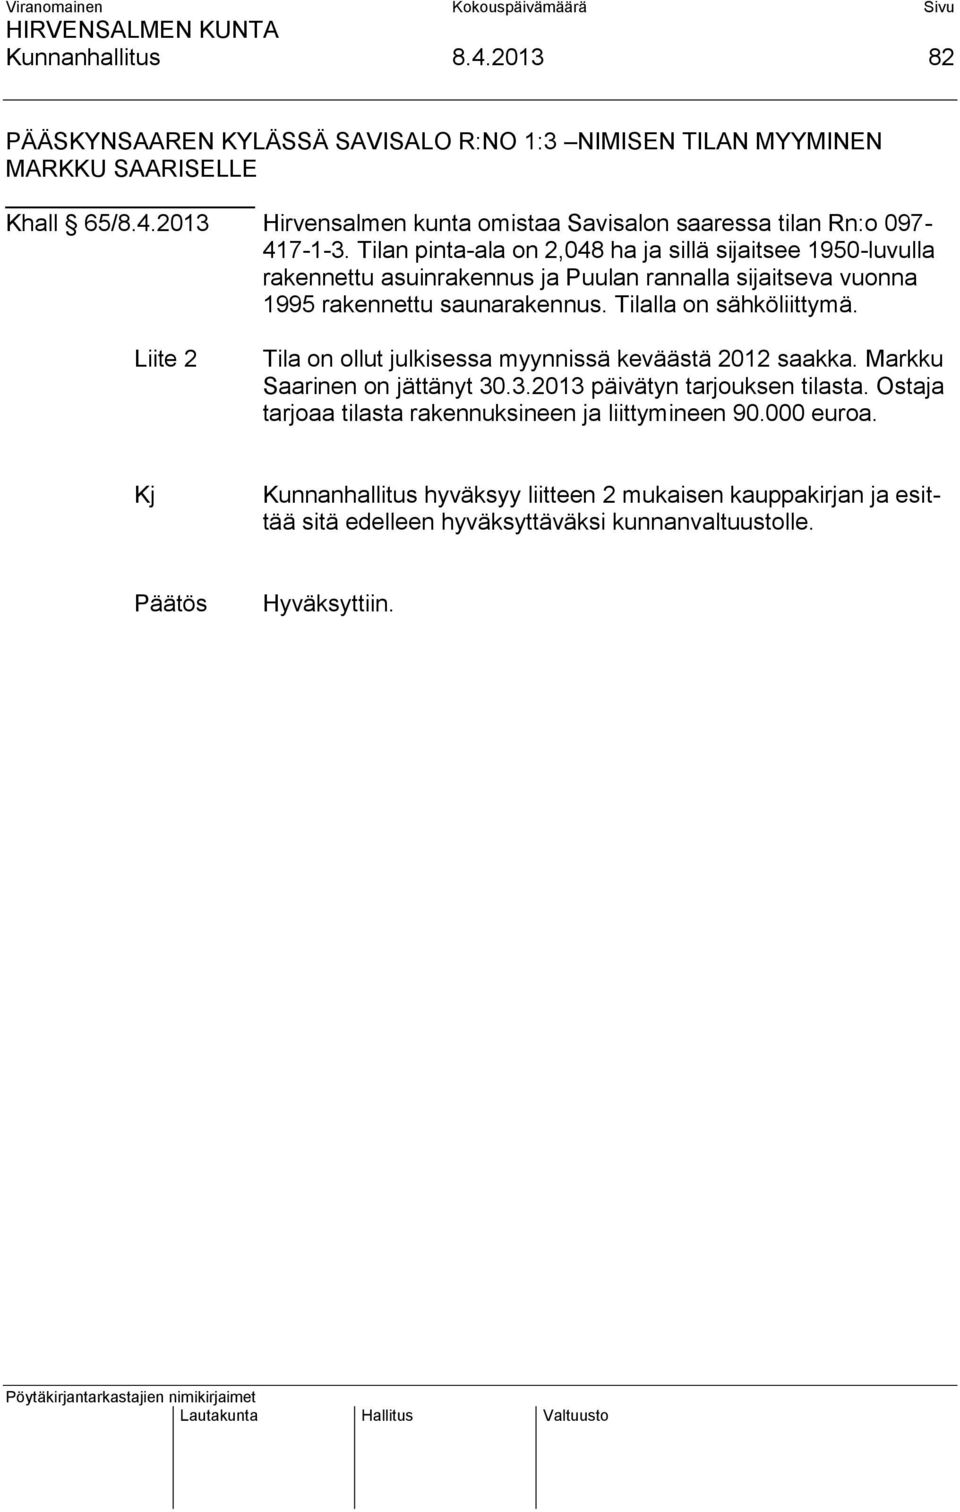 Liite 2 Tila on ollut julkisessa myynnissä keväästä 2012 saakka. Markku Saarinen on jättänyt 30.3.2013 päivätyn tarjouksen tilasta.